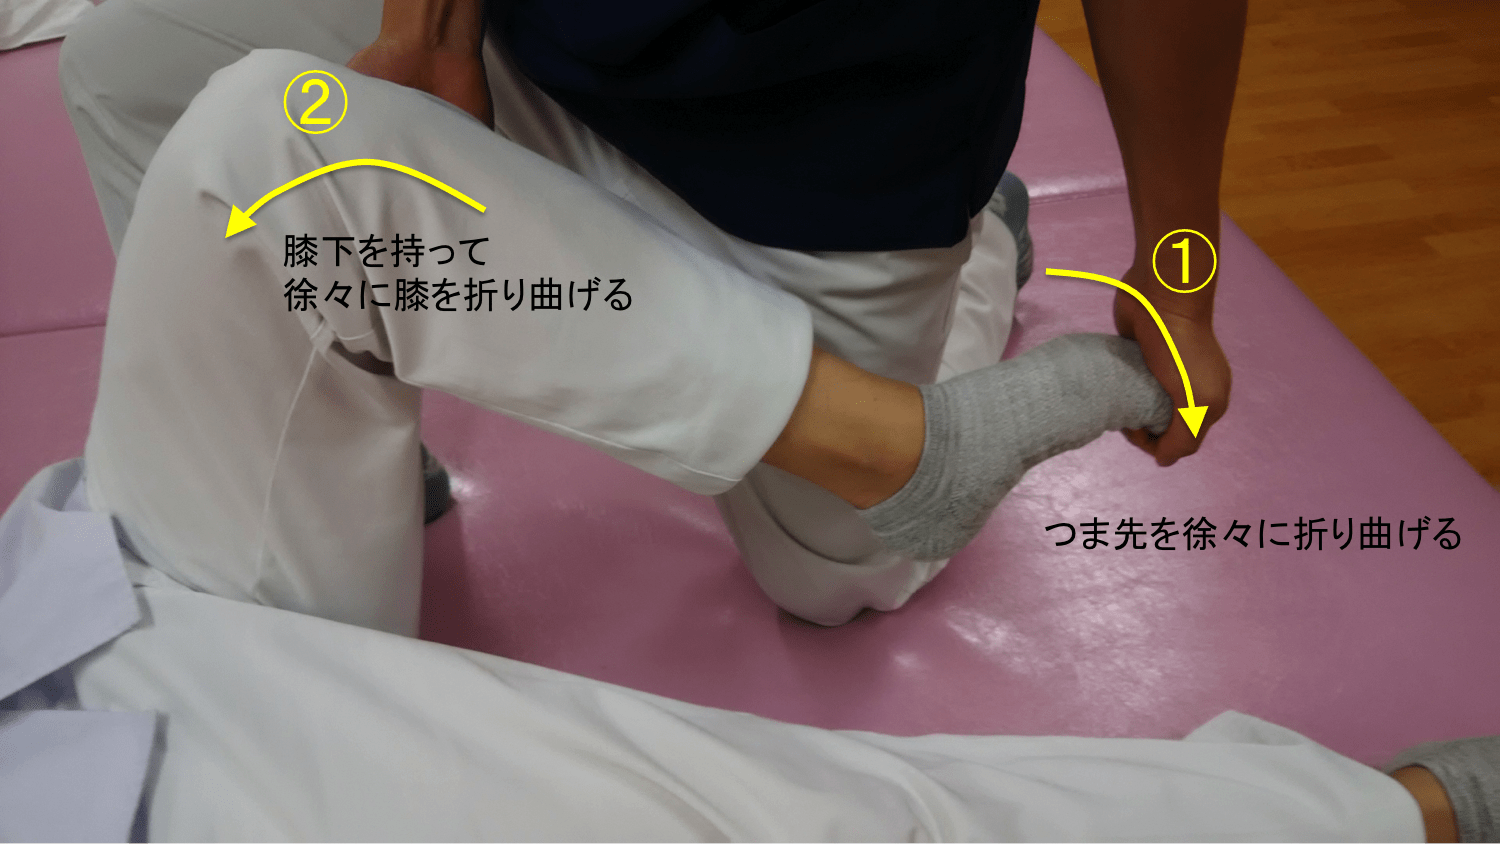 寝たきりなのに足はつっぱる ときの対処法 患者 家族向け 東埼玉病院 リハビリテーション科ブログ